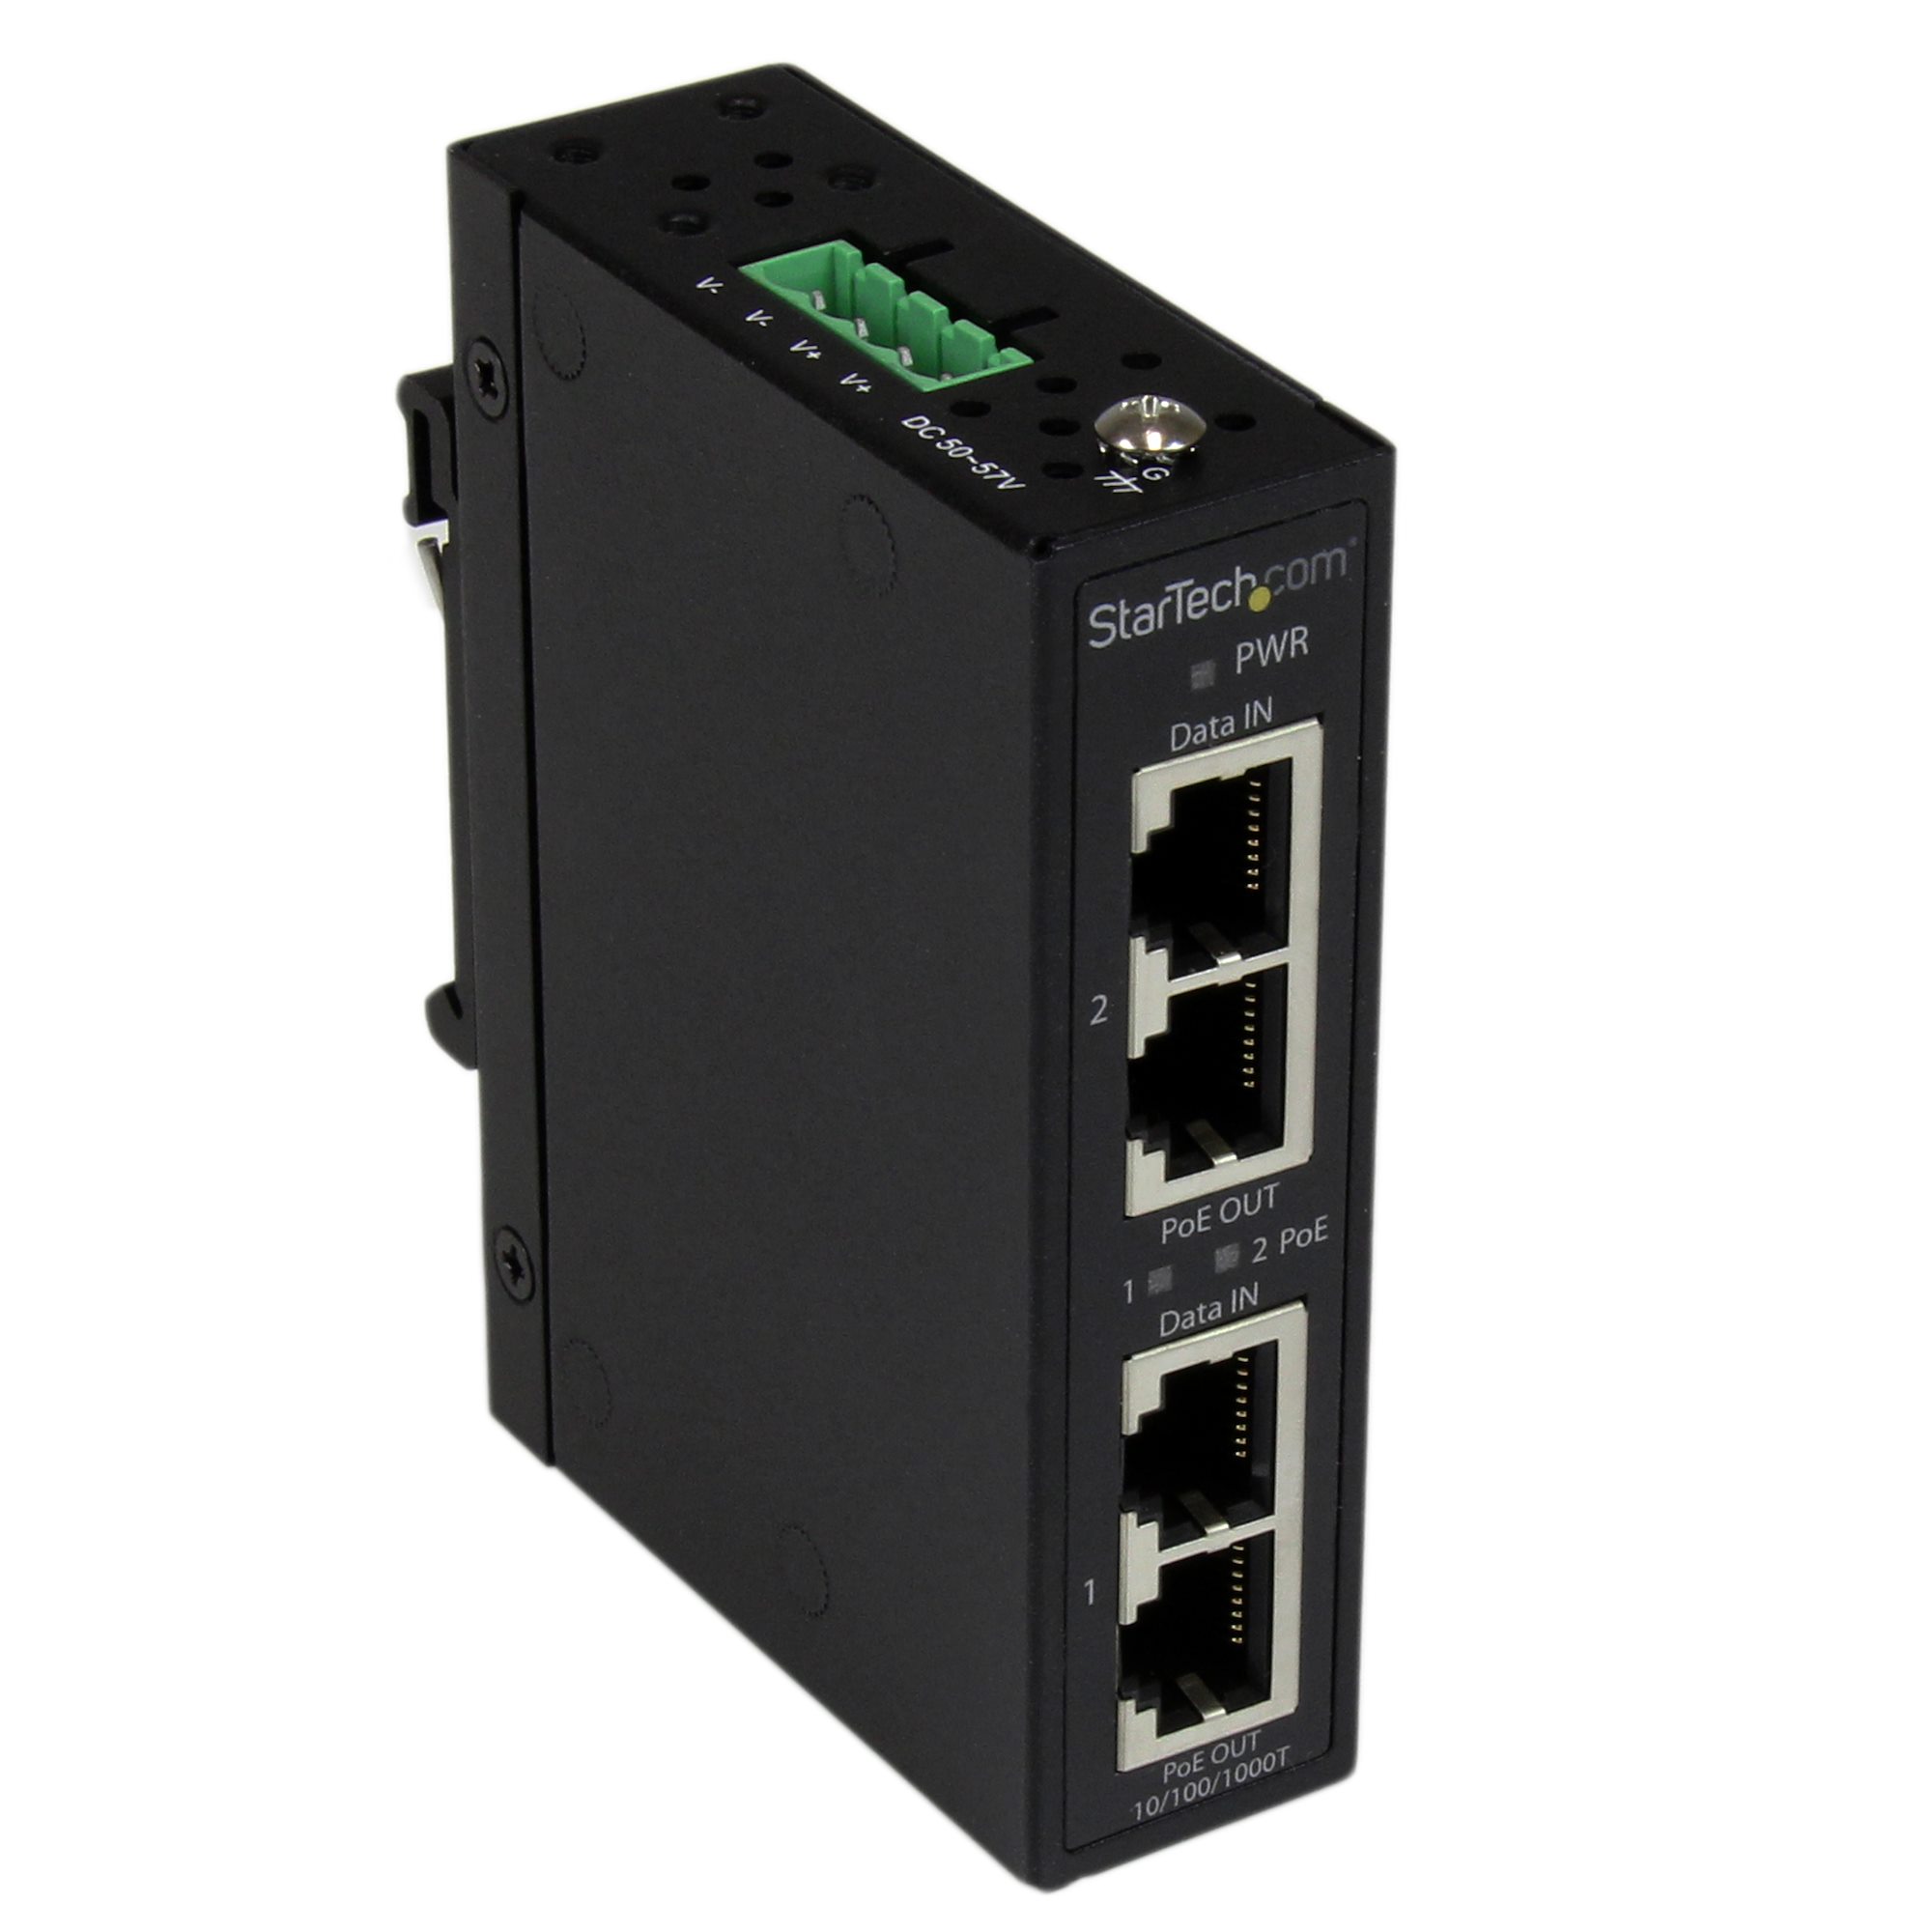 2 Port Gigabit PoE+ Injektor 48V / 30W - Ethernet Extender